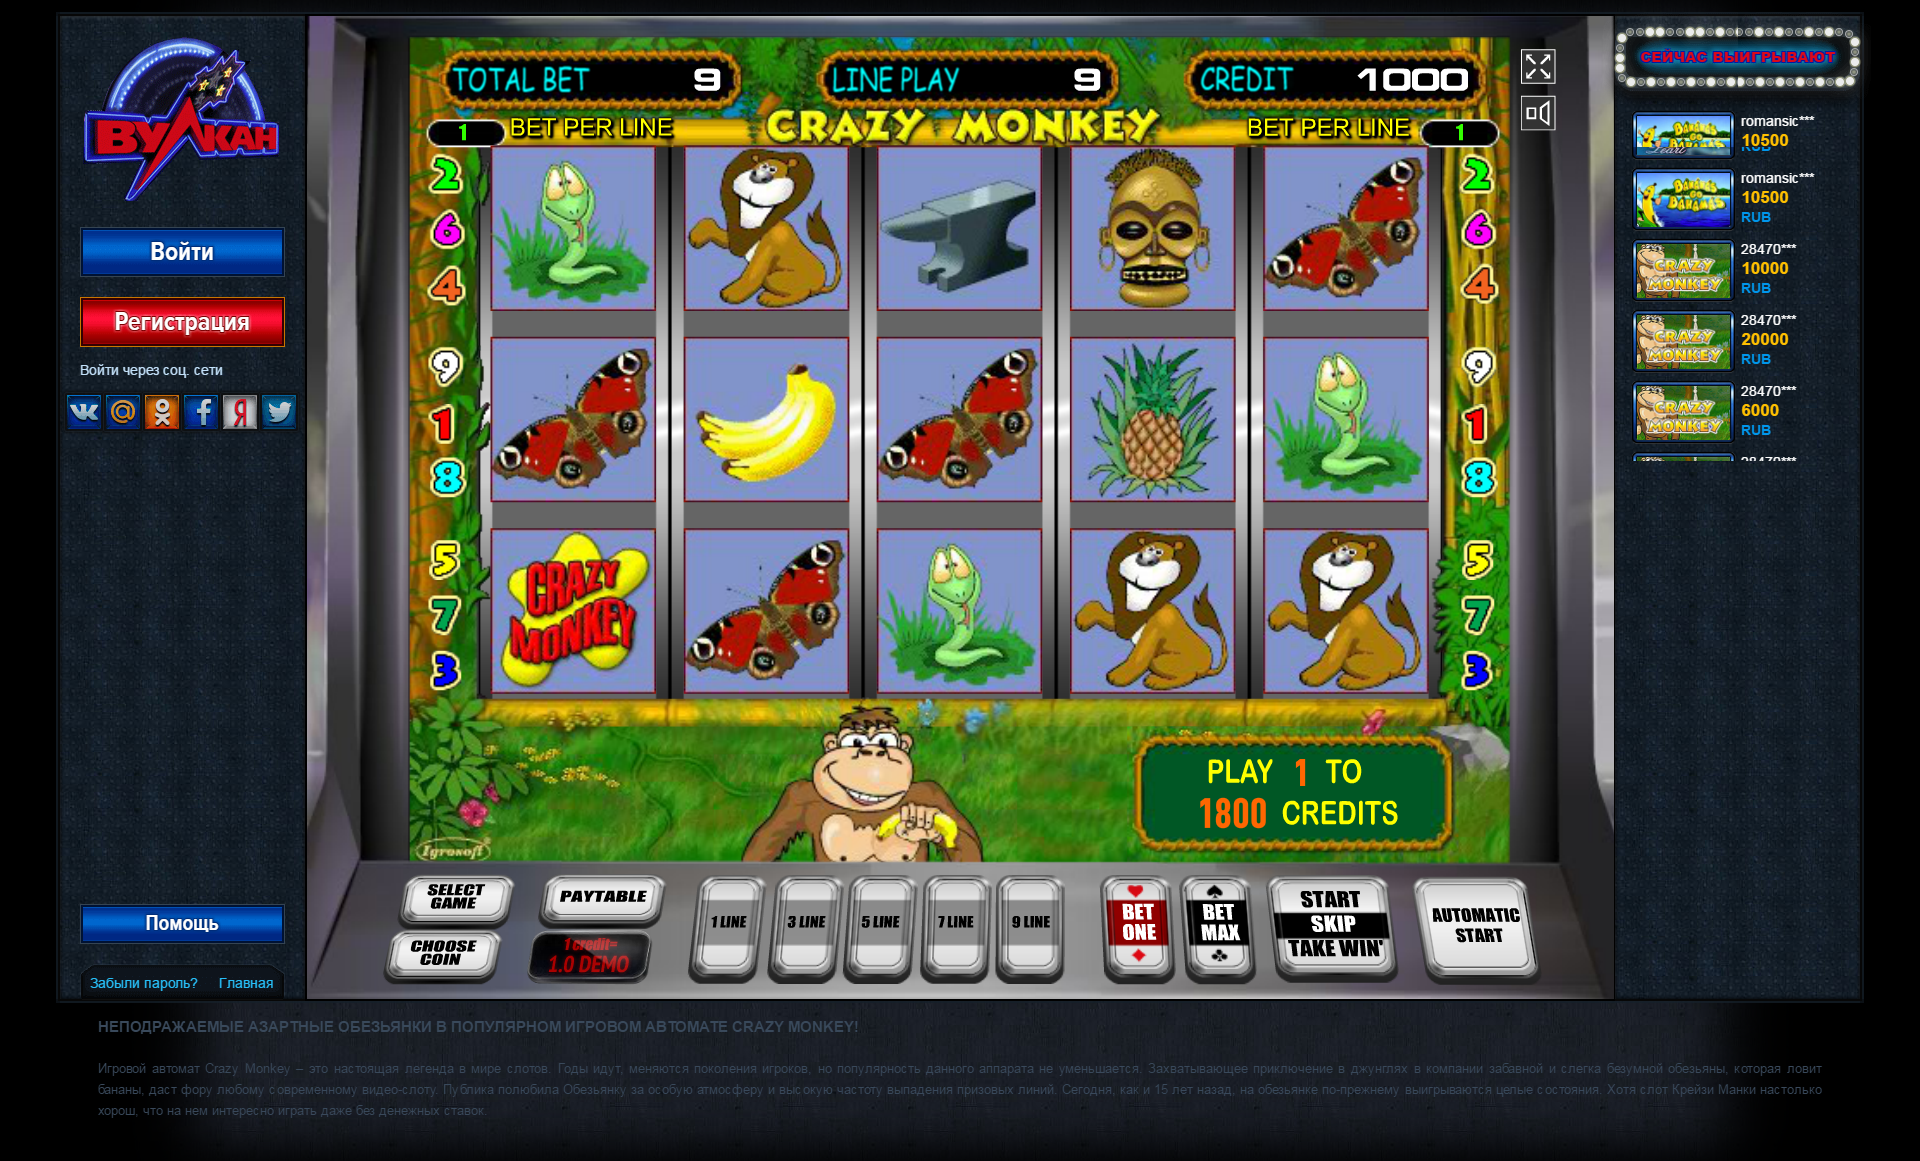 Вулкан игровые автоматы отзывы реальные casino goldfishka зеркало рабочее